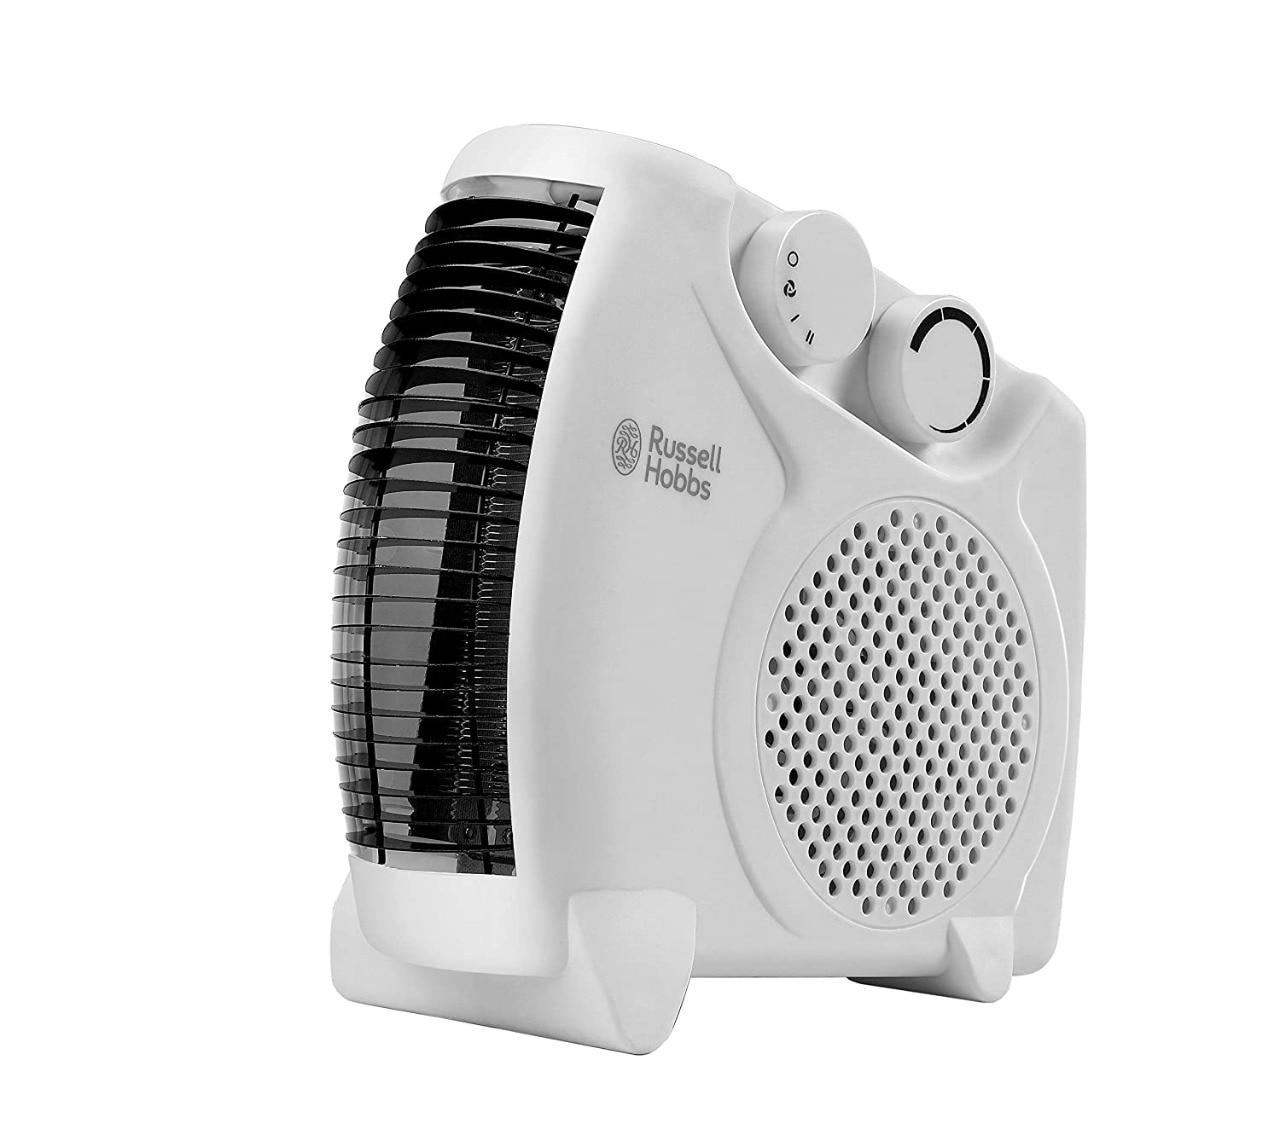 Amazon Offer: डील में 1000 रुपये से भी कम में खरीदें अपने घर के लिये बढ़िया ब्रांड के कॉम्पैक्ट Fan Room Heater